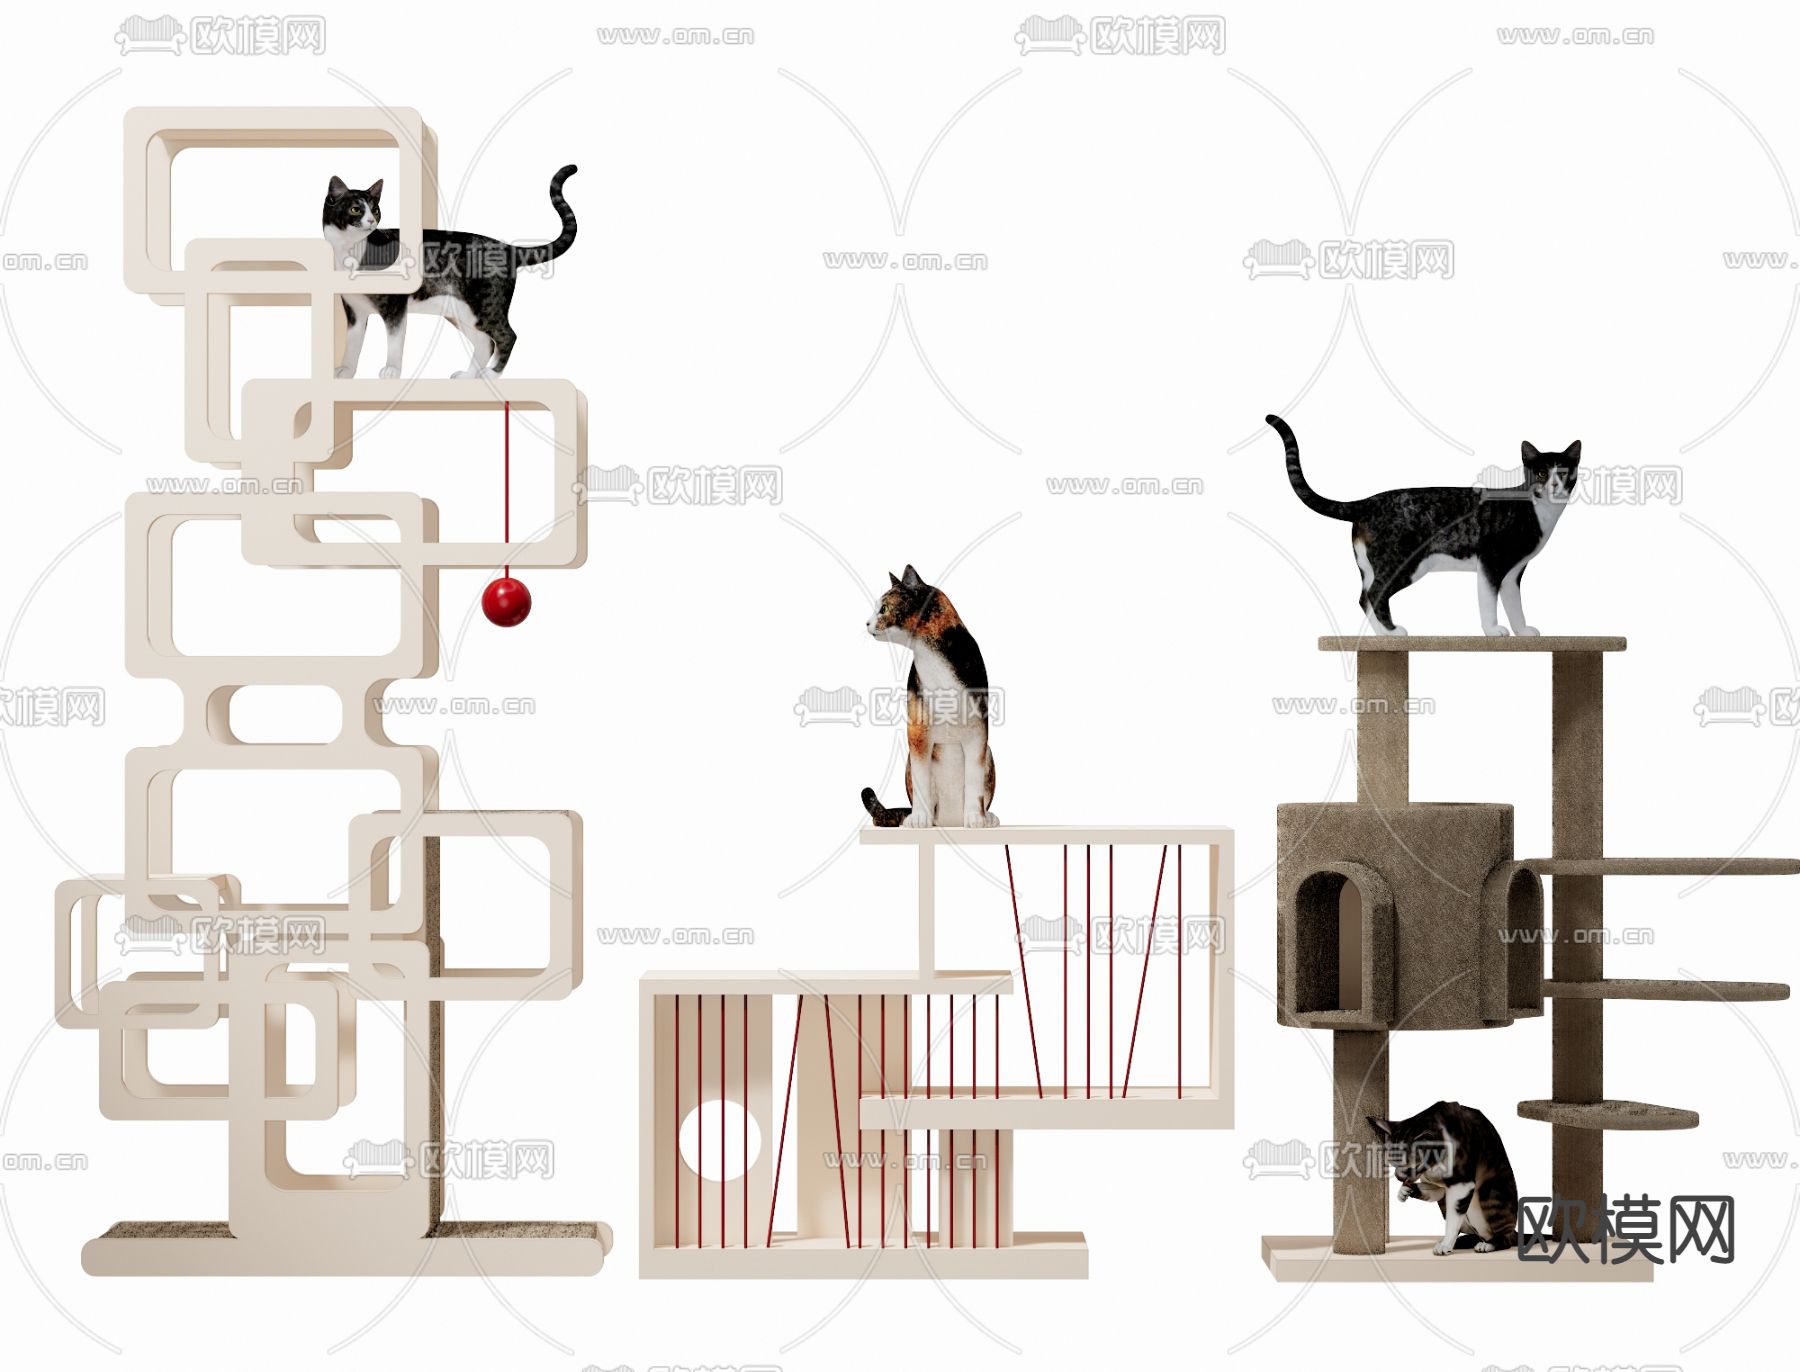 田子坊里的撸猫体验馆：猫之一隅 | 平介设计-建e网设计案例